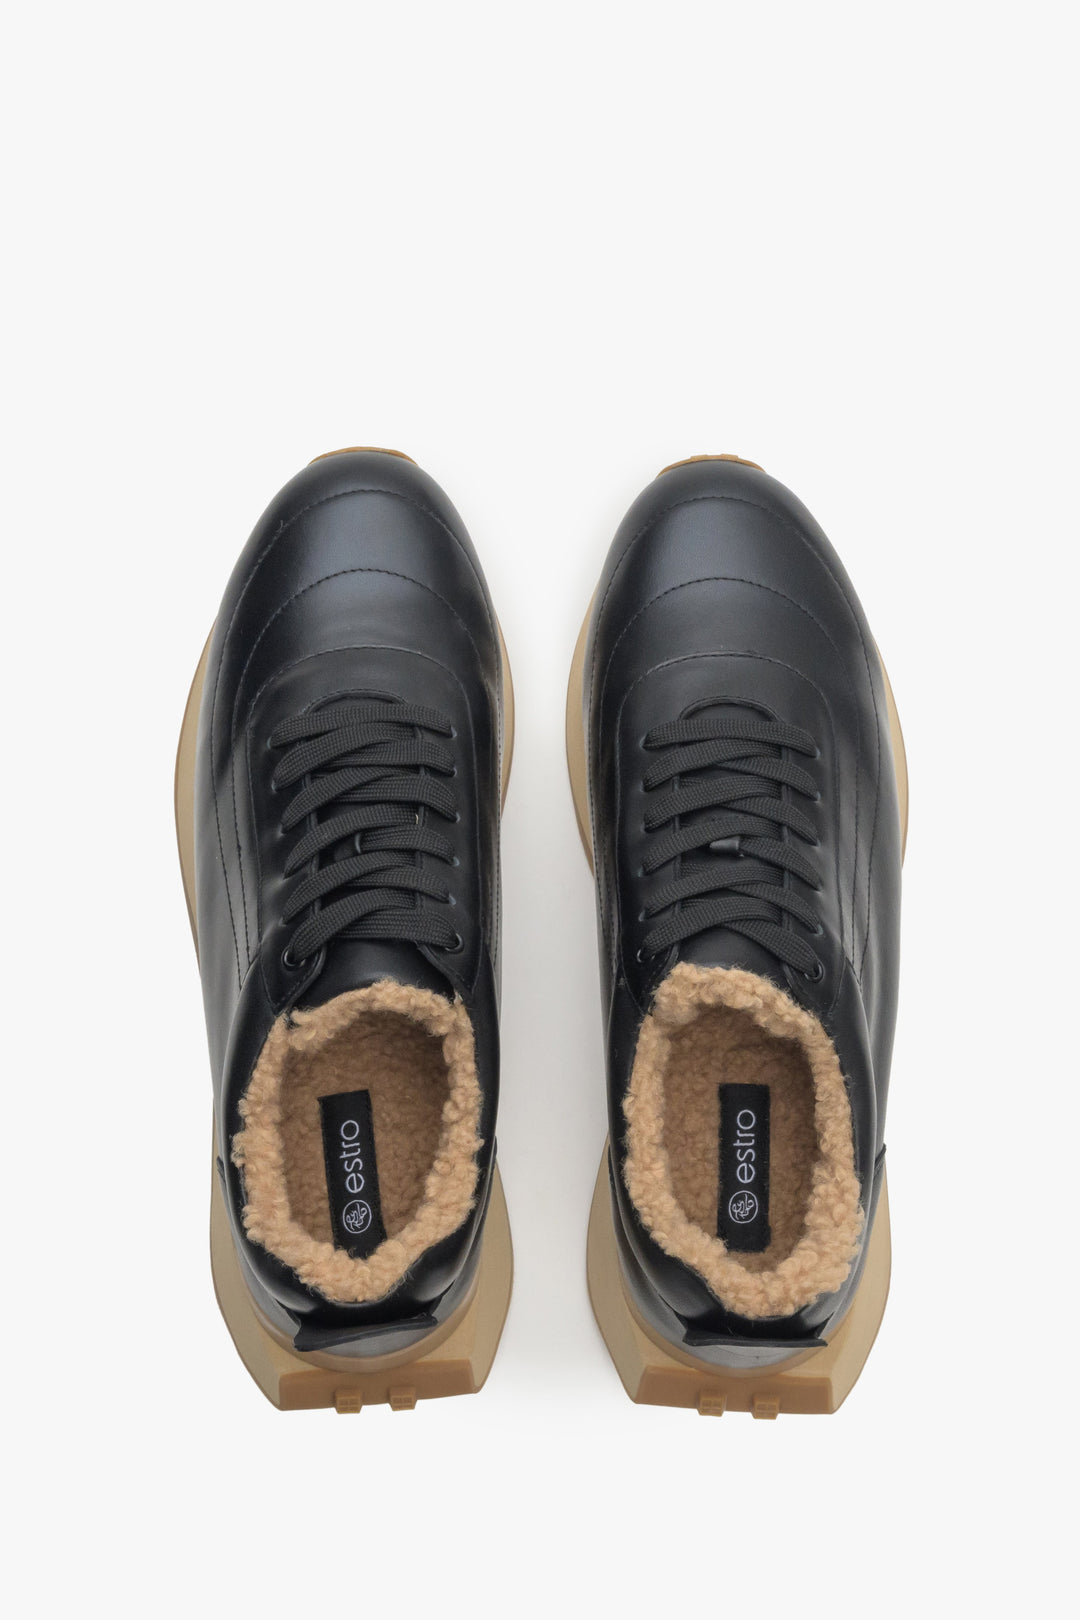 Skórzane czarne sneakersy damskie na zimę Estro - prezentacja modelu z góry.